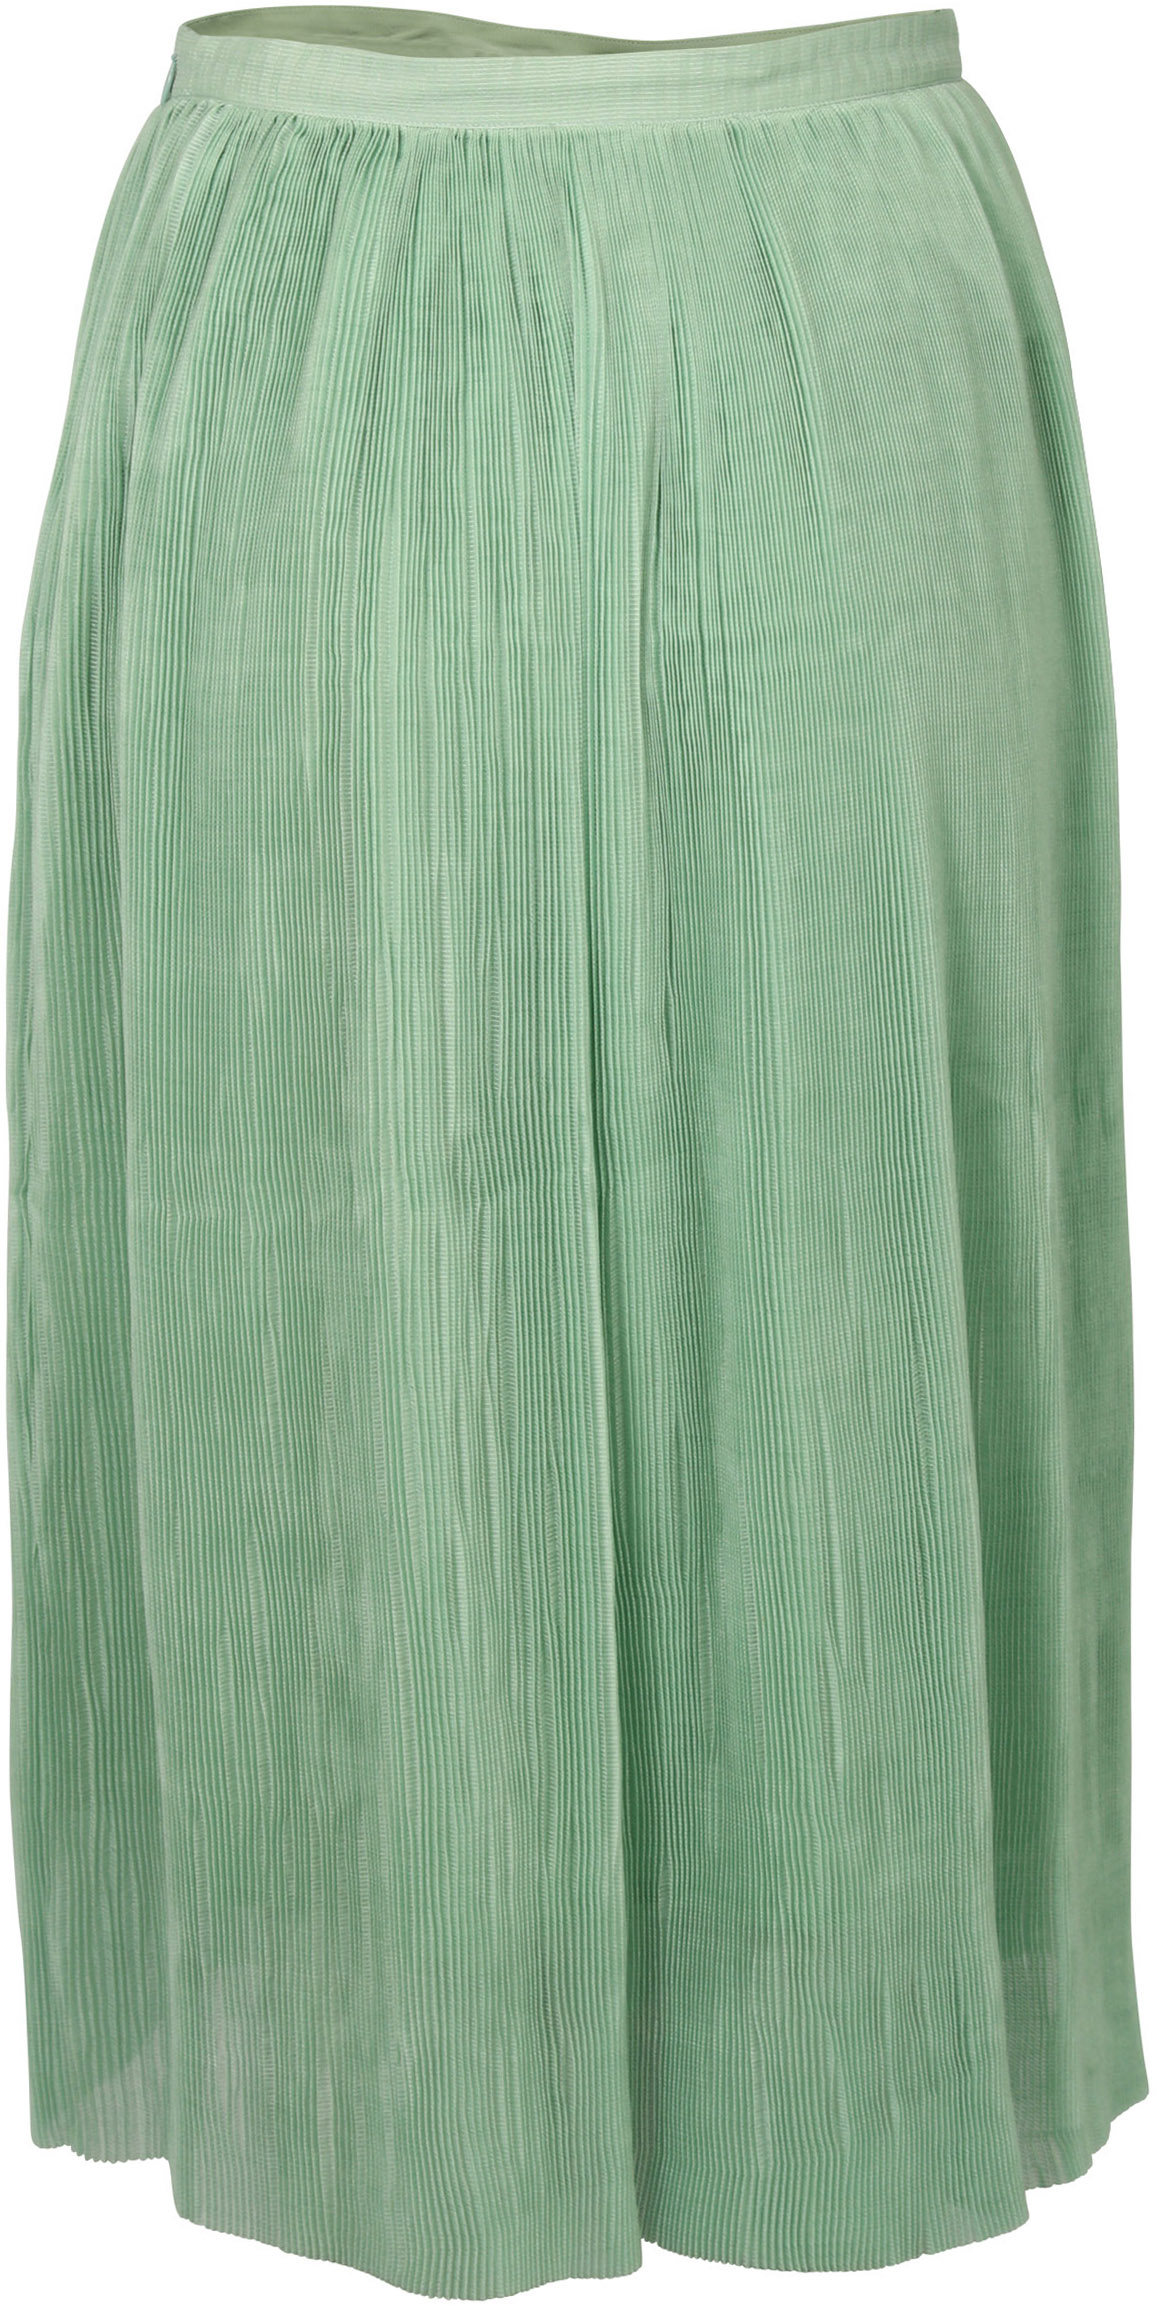 FWSS Skirt Thi Jade Green S